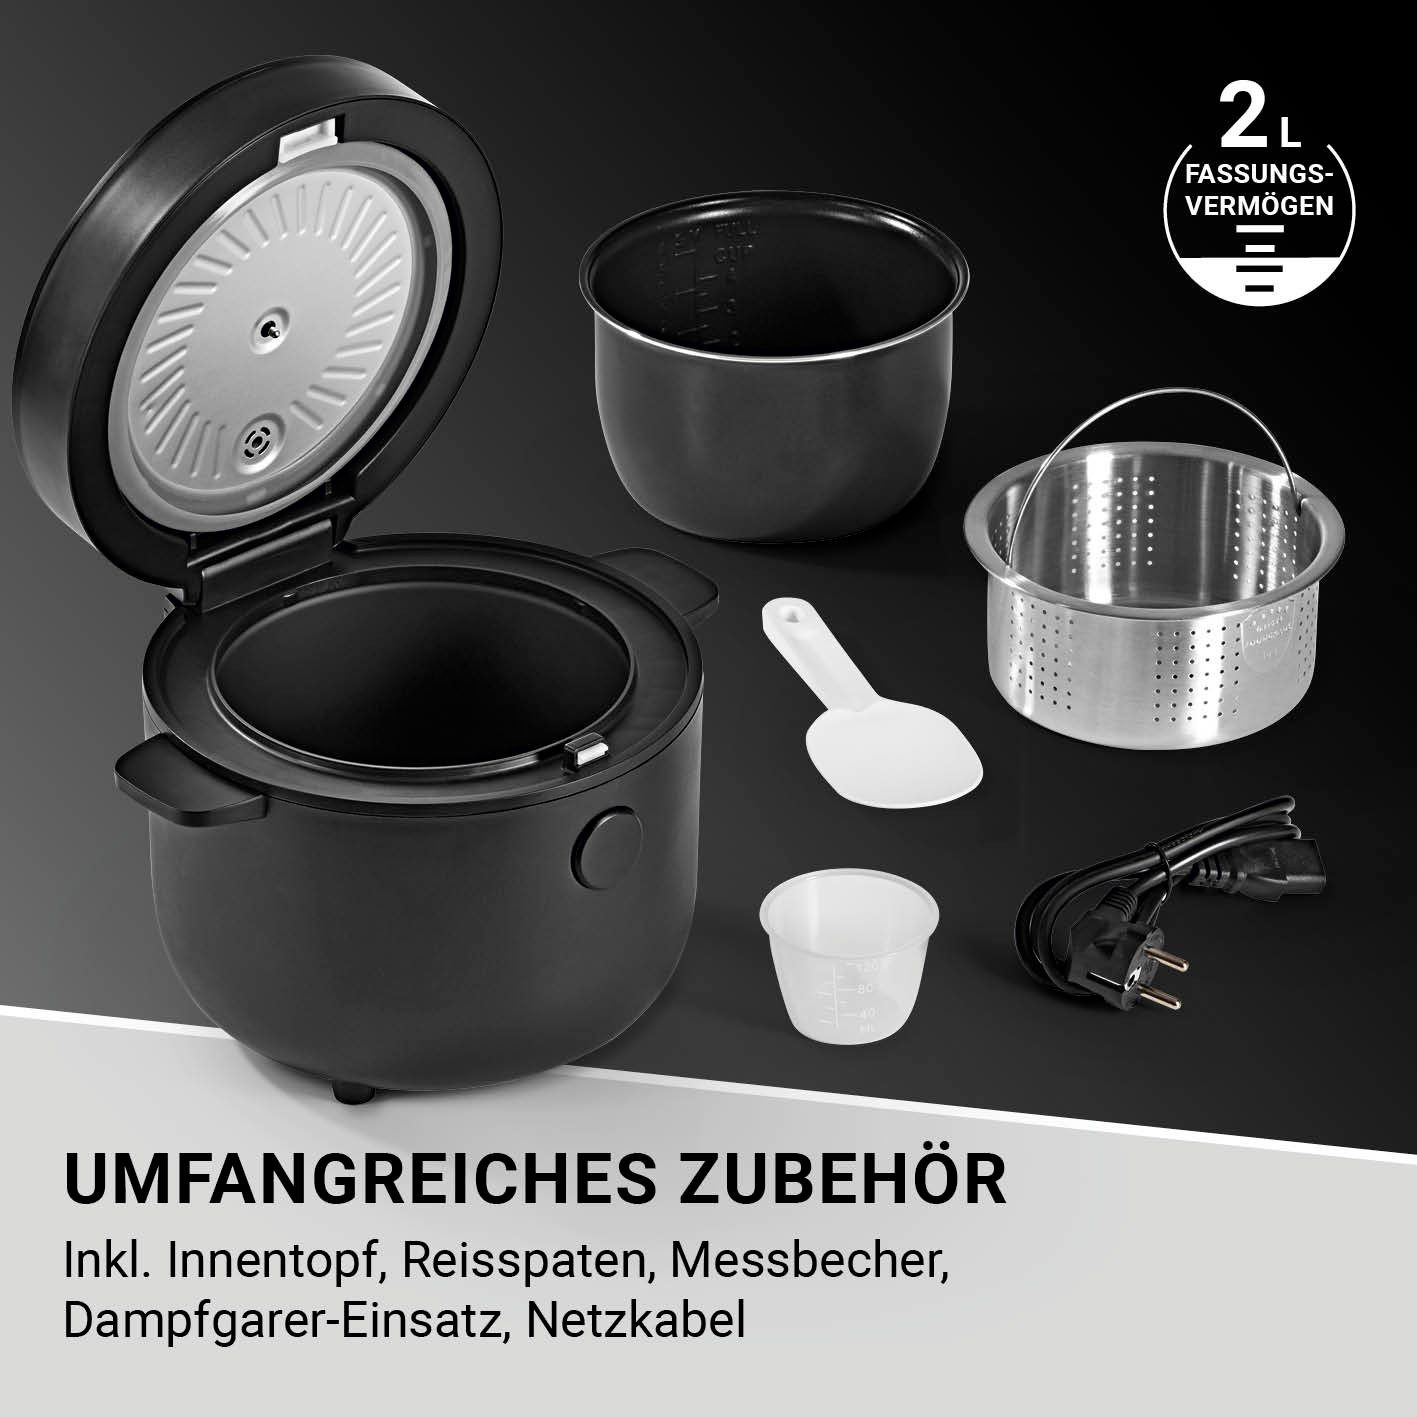 N8WERK schwarz Digitaler Reiskocher Reiskocher